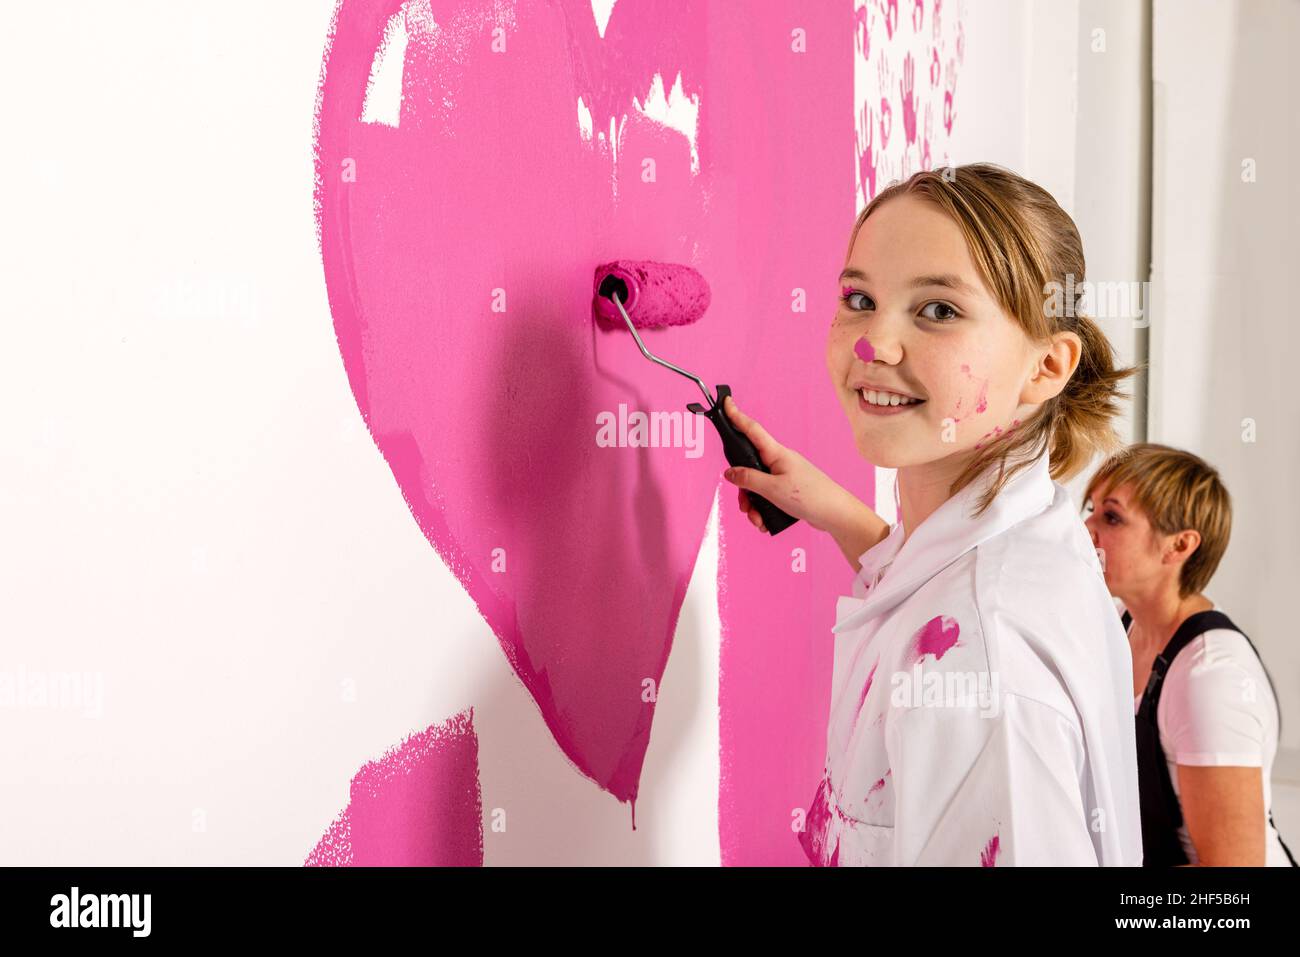 Giovane ragazza sta dipingendo con un rullo riempito di vernice rosa su una parete. Ragazza sta guardando la macchina fotografica con un sorriso felice. La madre è vista nel backgro Foto Stock